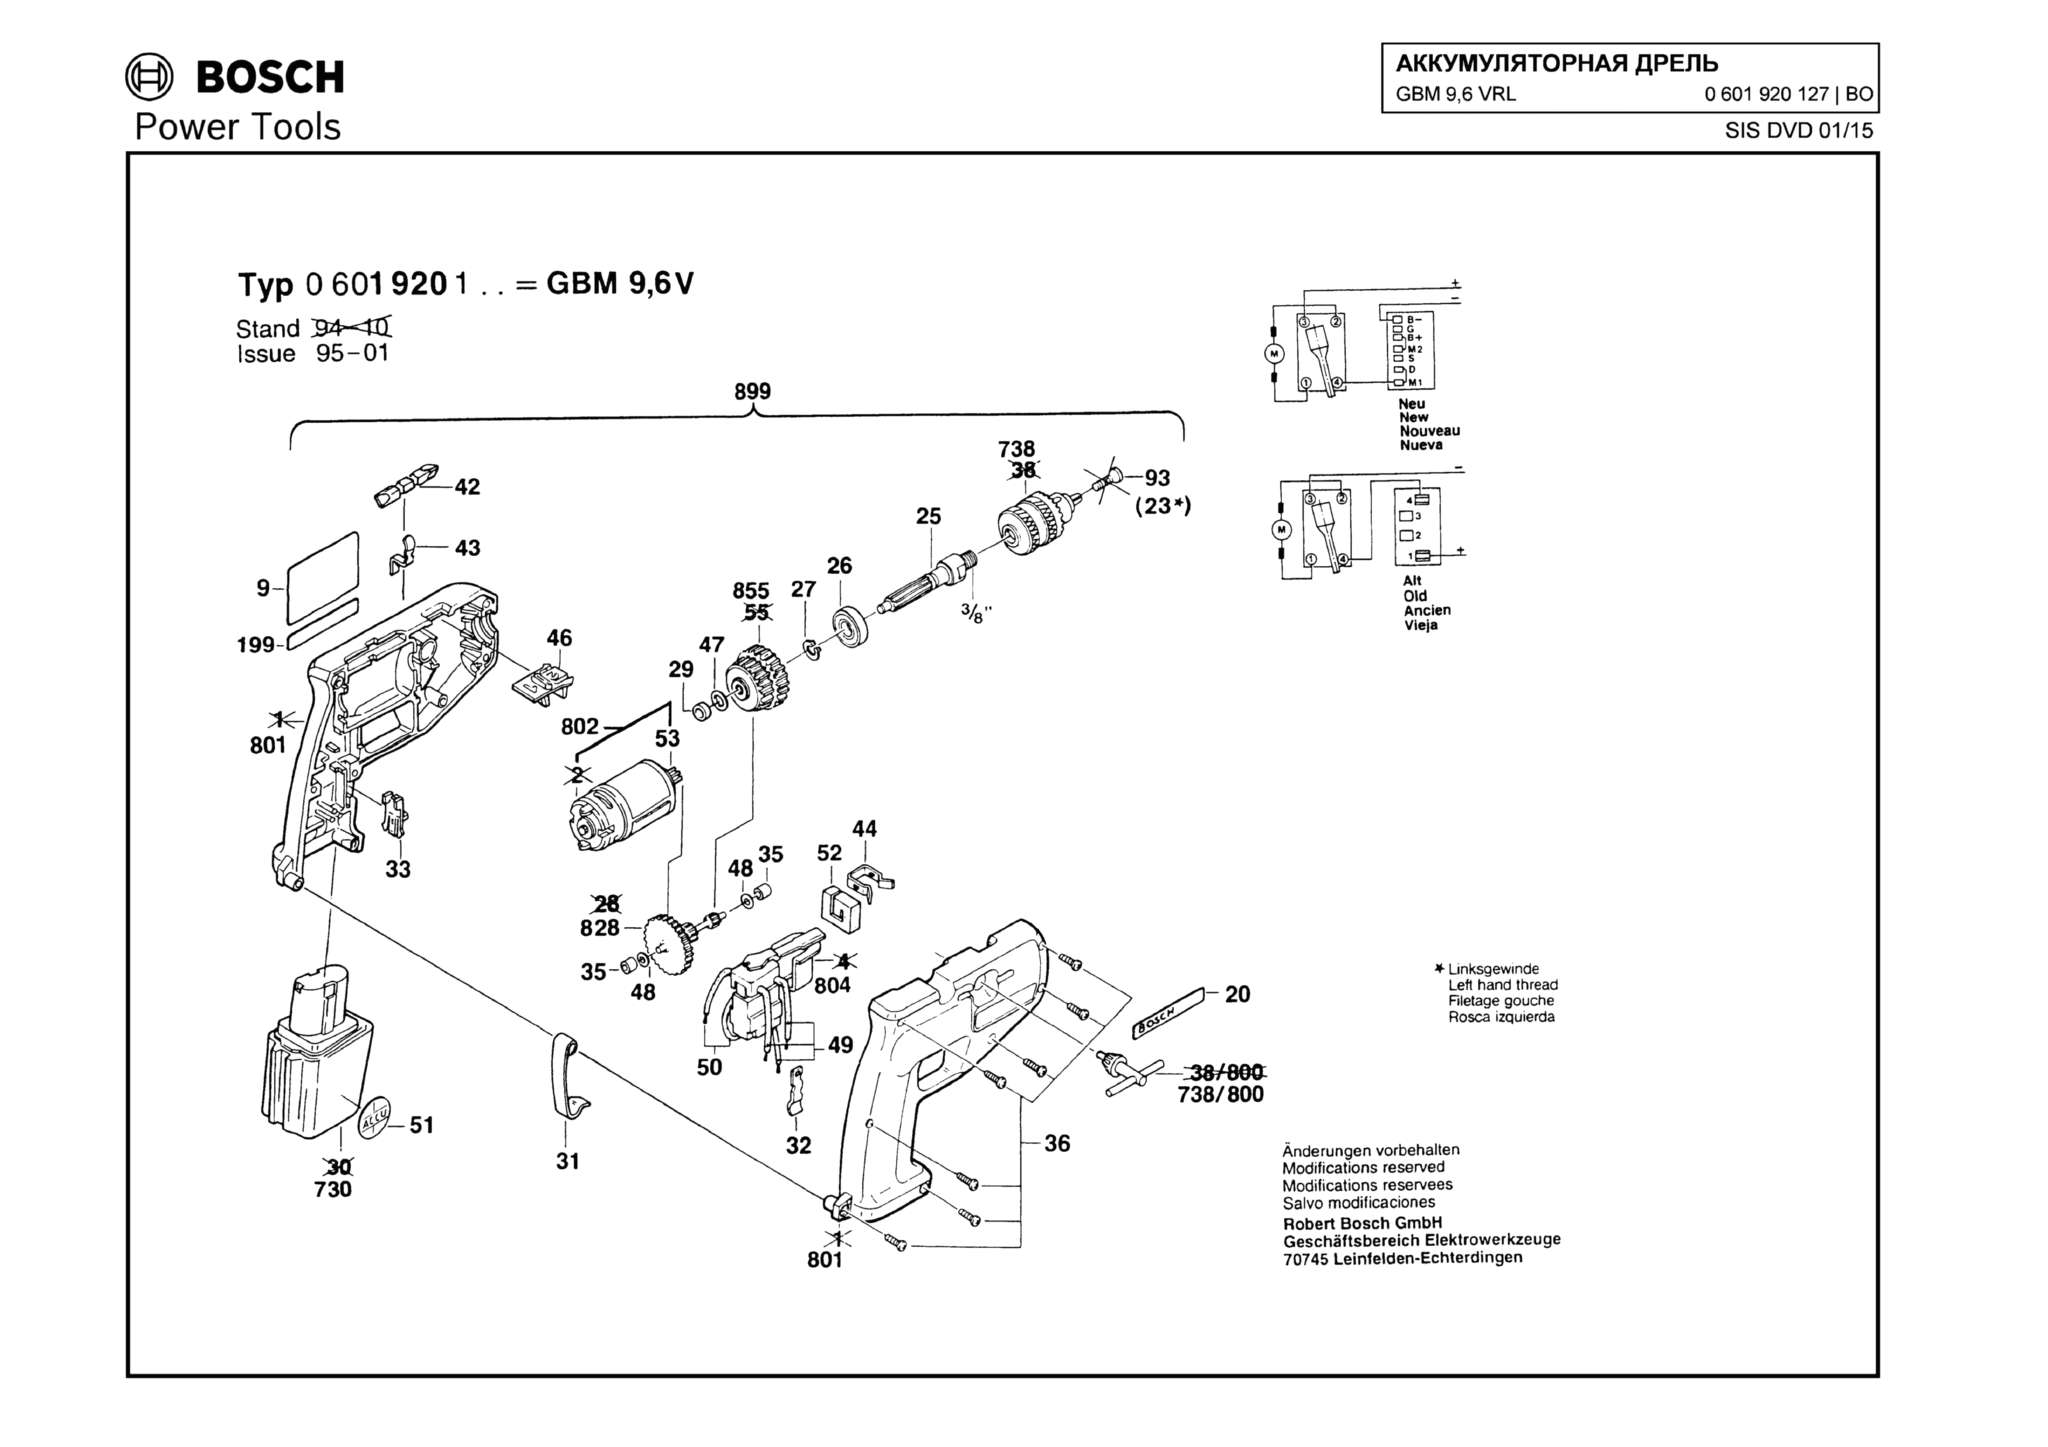 Запчасти, схема и деталировка Bosch GBM 9,6 VRL (ТИП 0601920127)